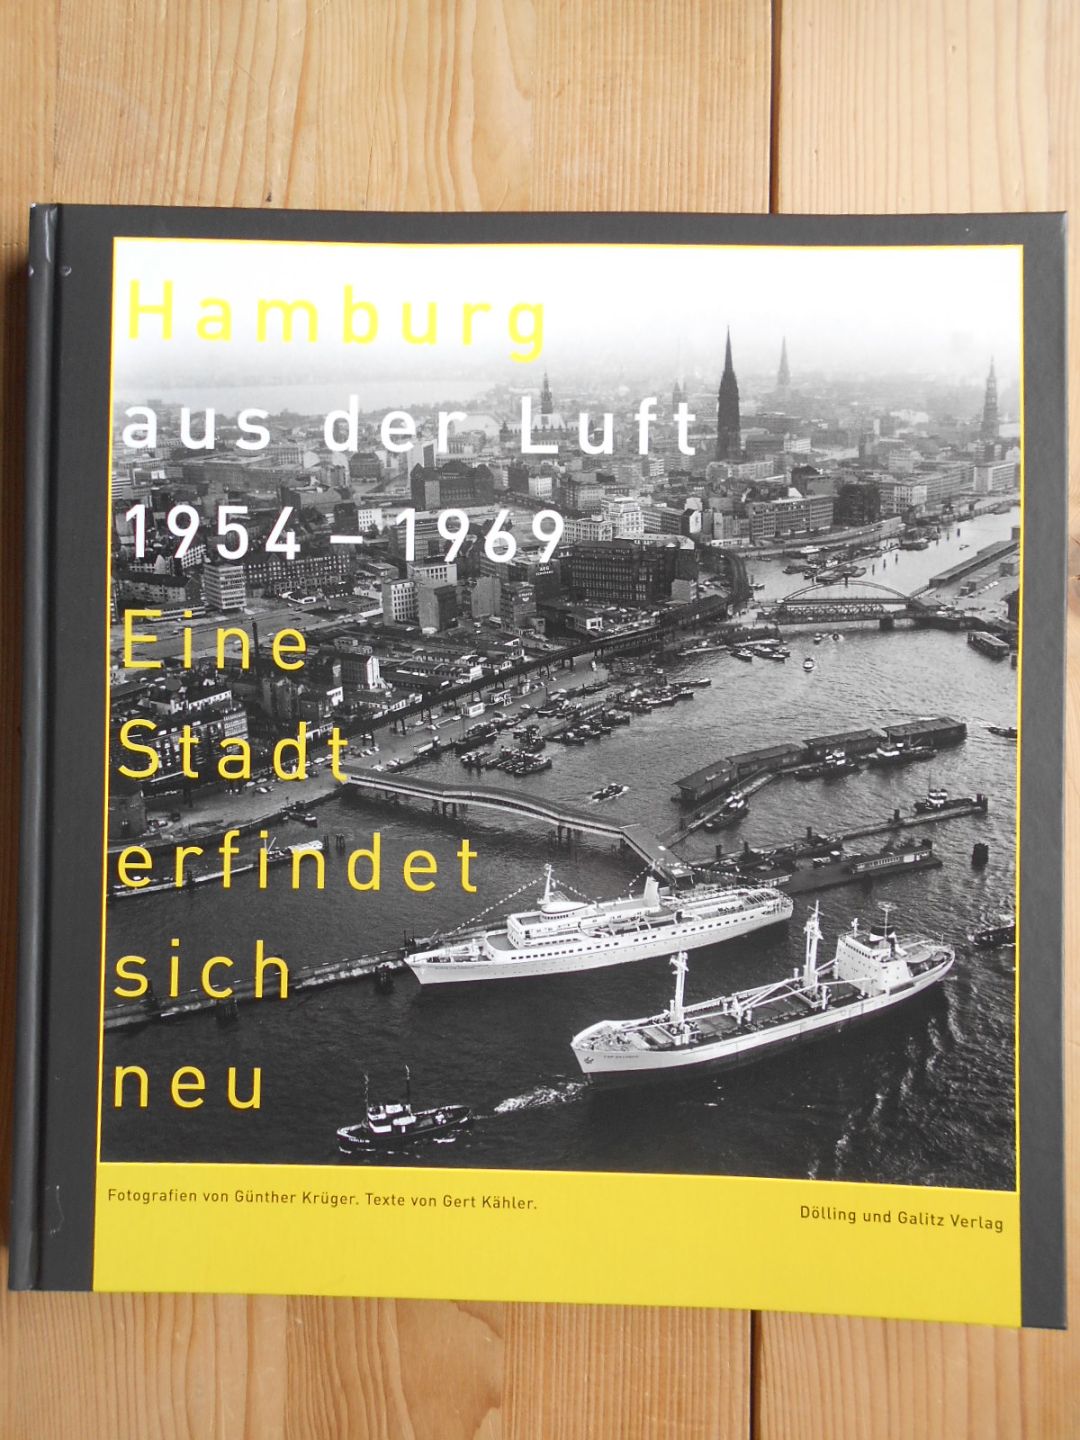 Hamburg aus der Luft : 1954 - 1969 ; eine Stadt erfindet sich neu. Fotogr. von Günther Krüger. Texte von Gert Kähler. [Red.: Sabine Niemann] - Krüger, Günther und Gert Kähler